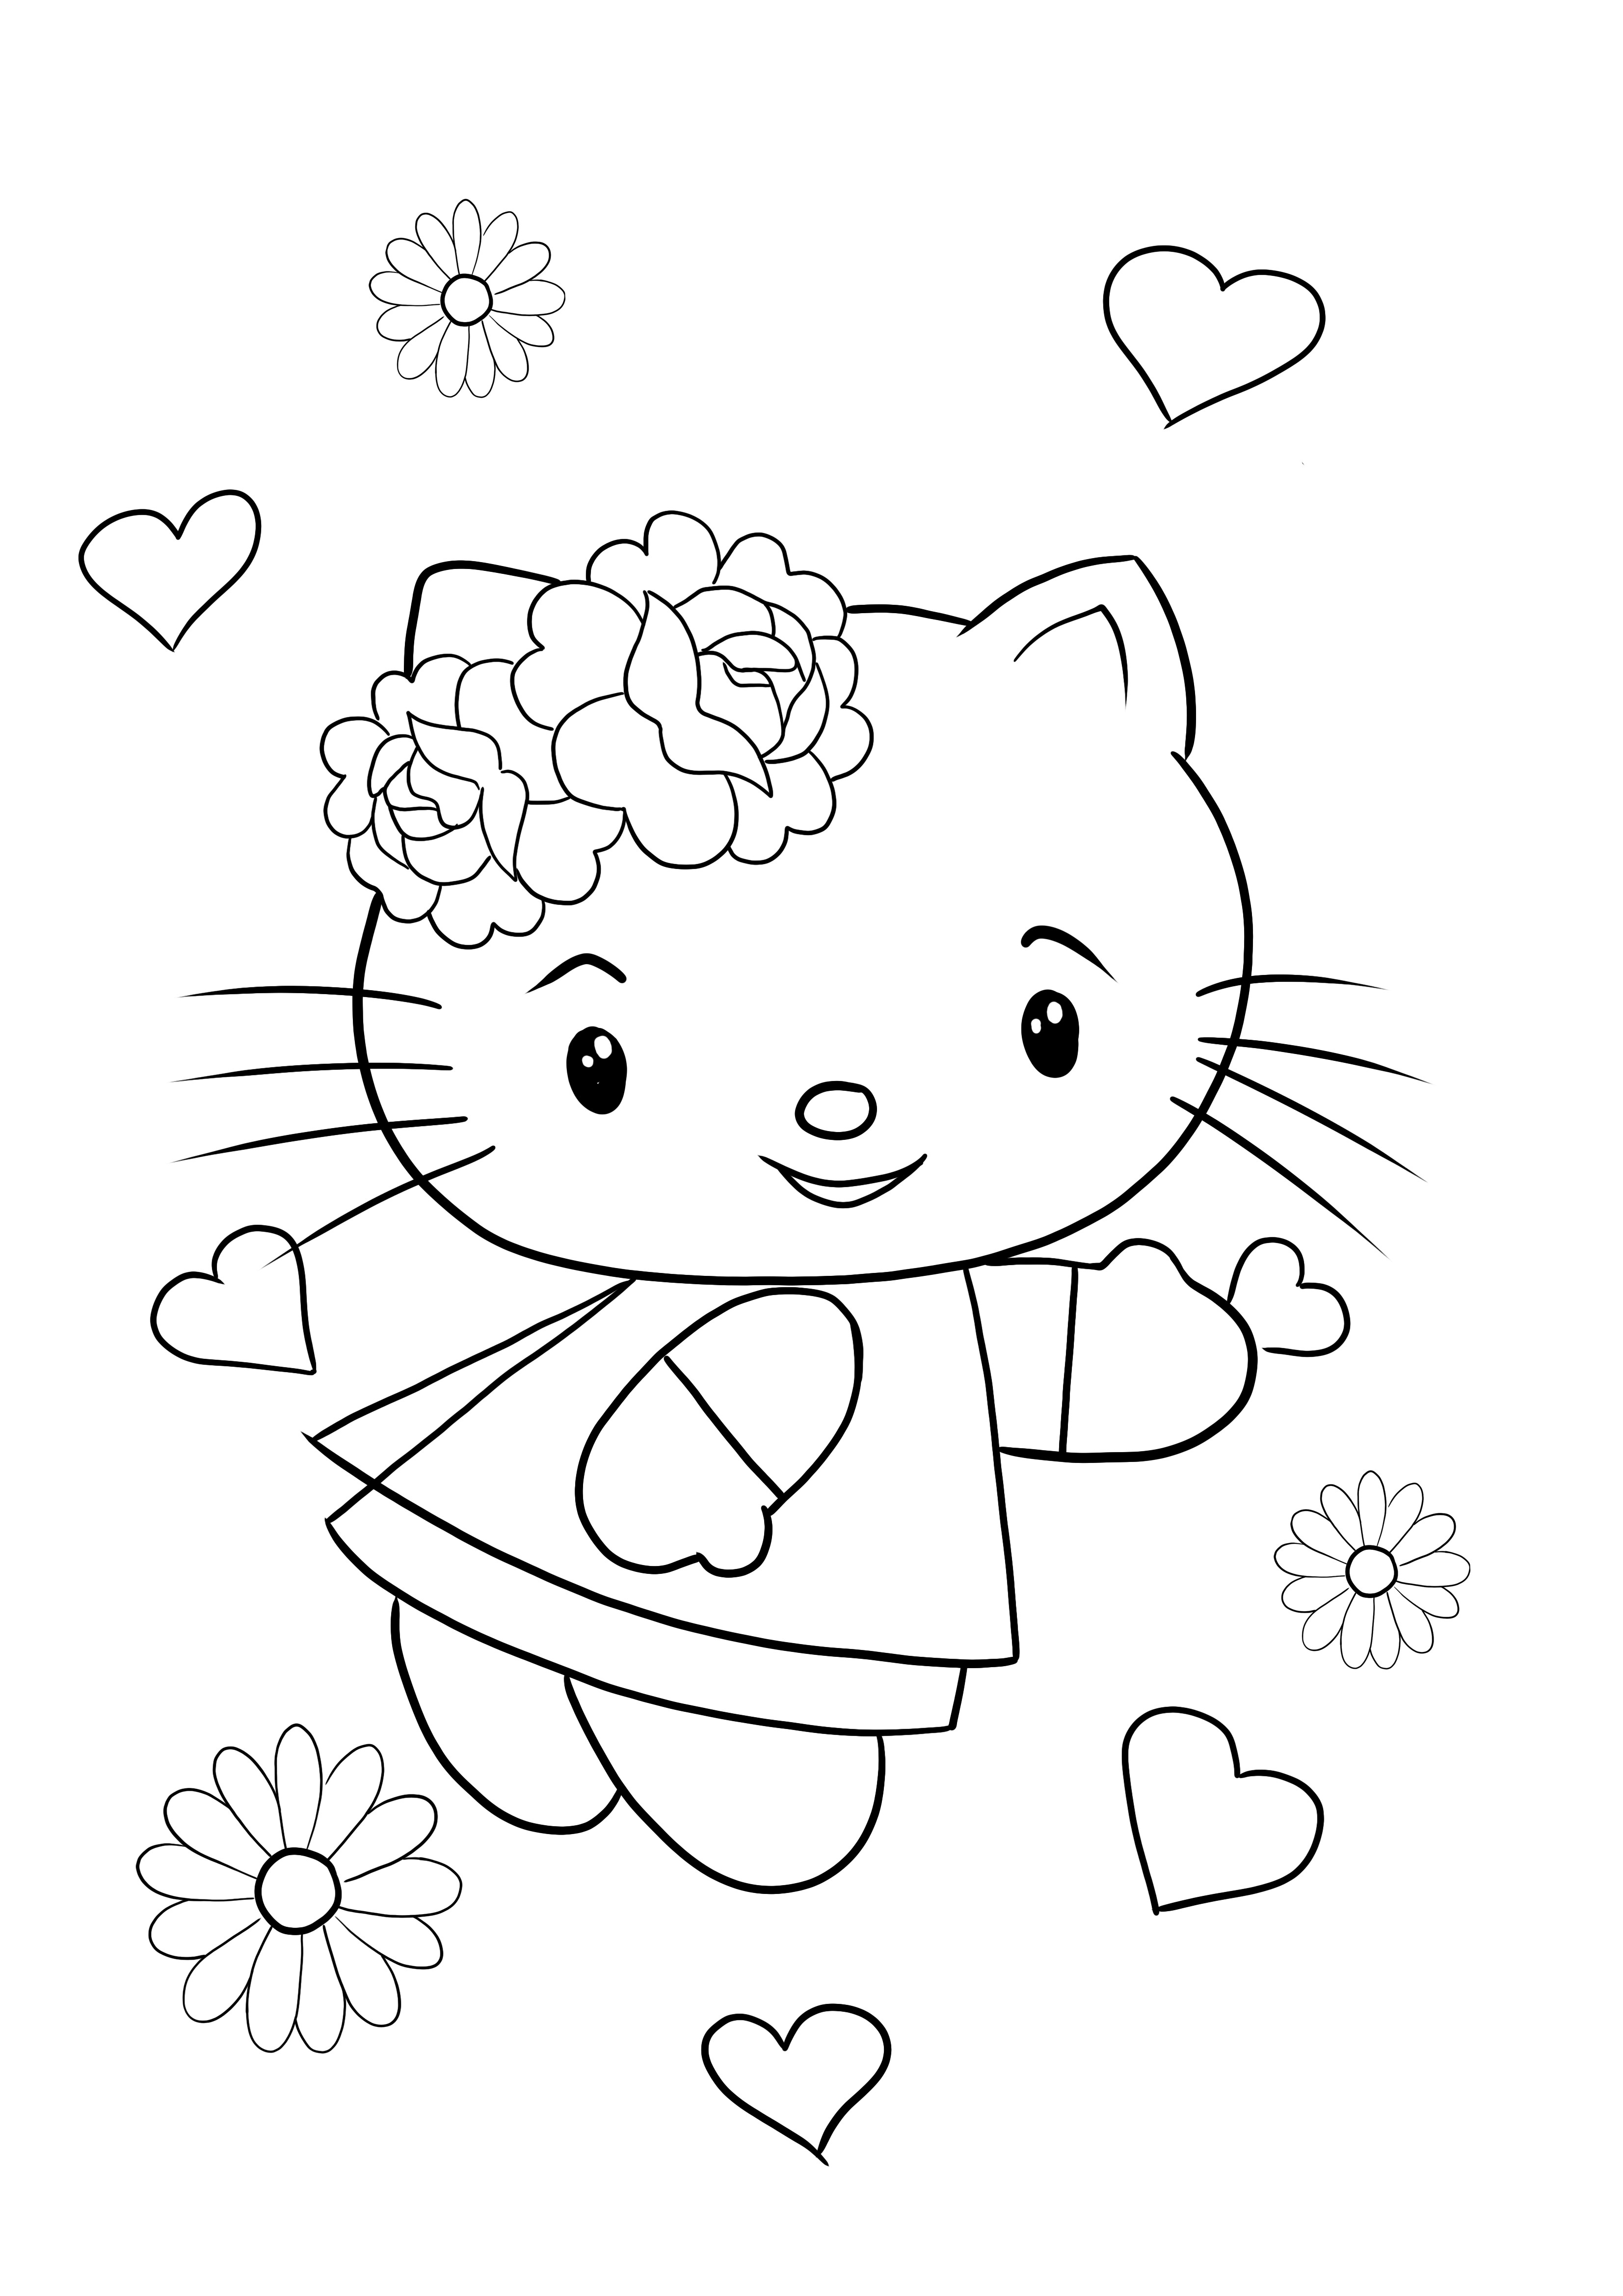 Tarjeta de Hello Kitty para el día de los enamorados para colorear y descargar gratis